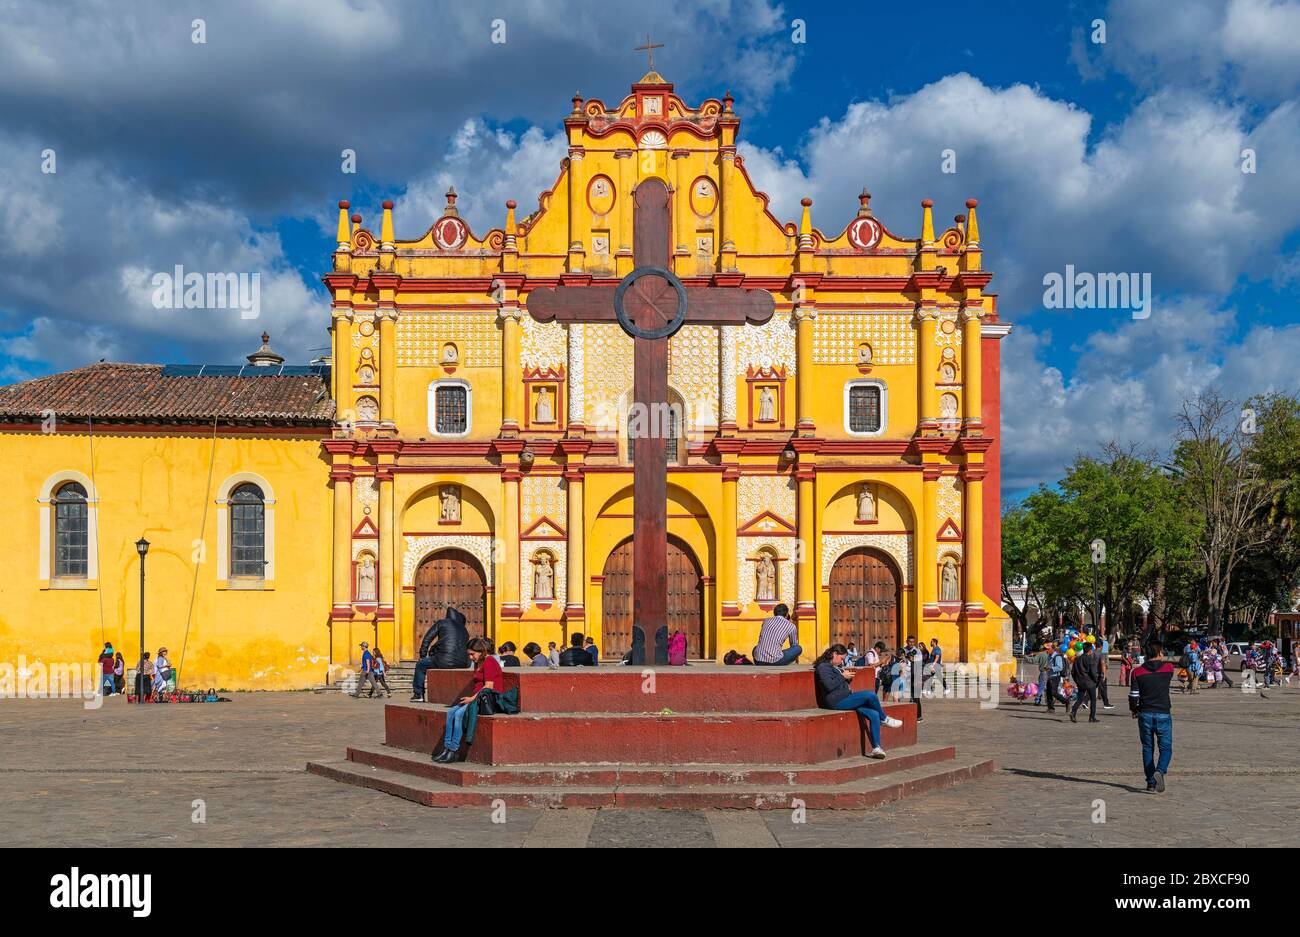 Vida de la ciudad con fachada de la Catedral de San Cristóbal de las Casas en colorido estilo colonial mexicano, México. Foto de stock